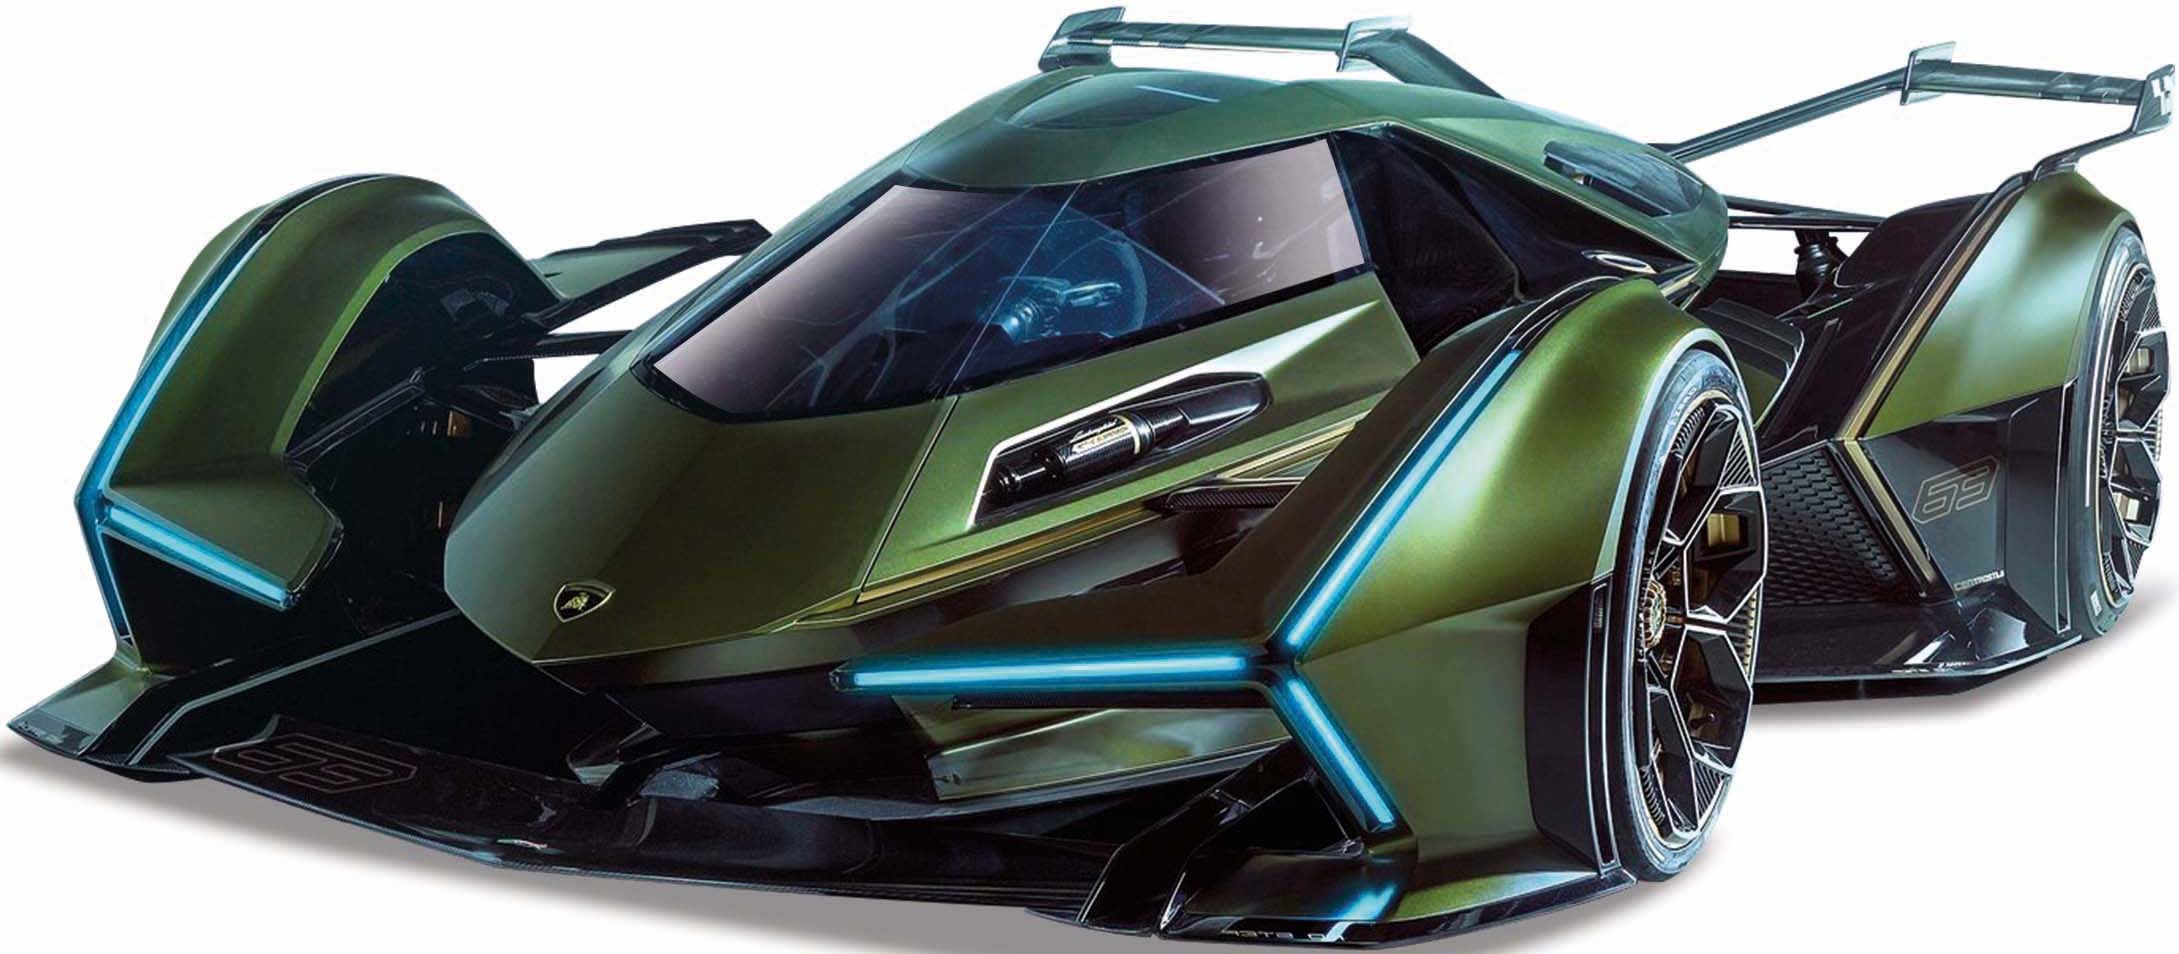 Maisto® Sammlerauto »Lamborghini V12 Vision Grand Turismo«, 1:18